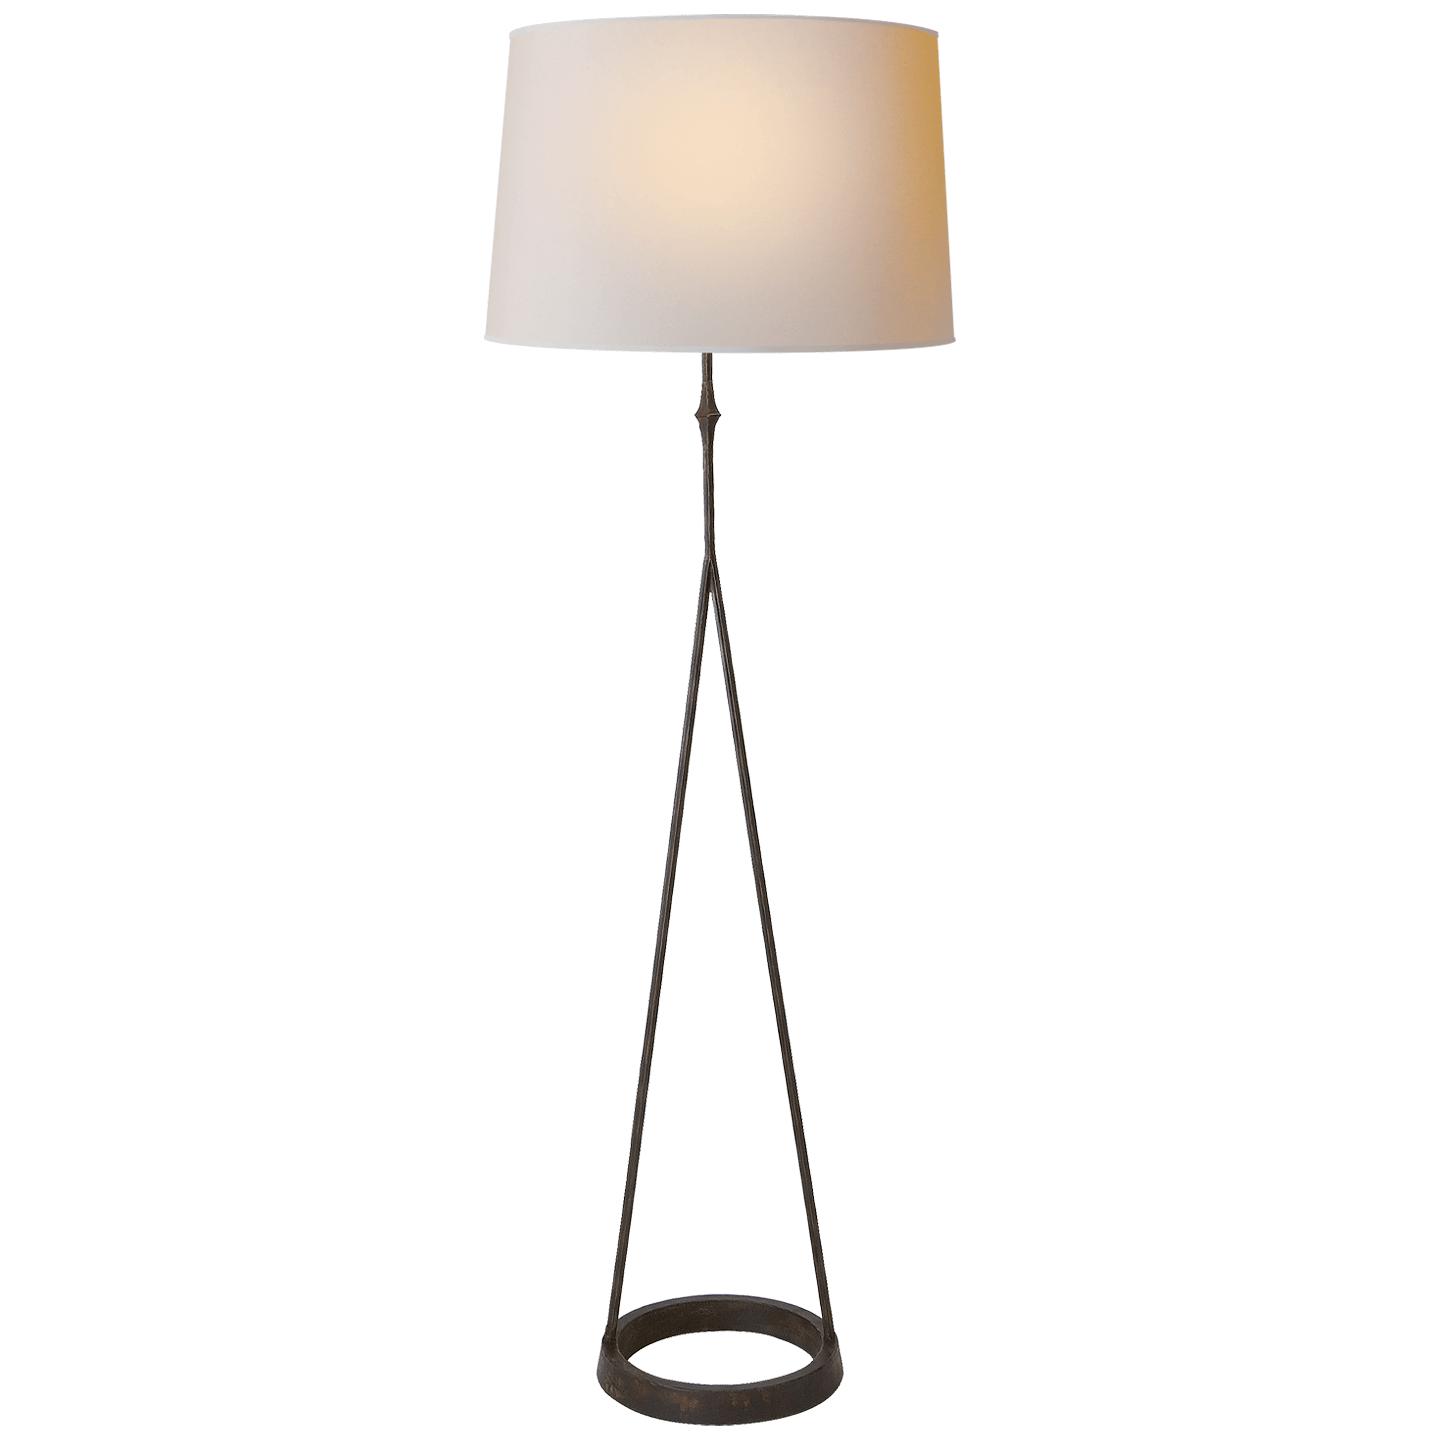 Купить Торшер Dauphine Floor Lamp в интернет-магазине roooms.ru